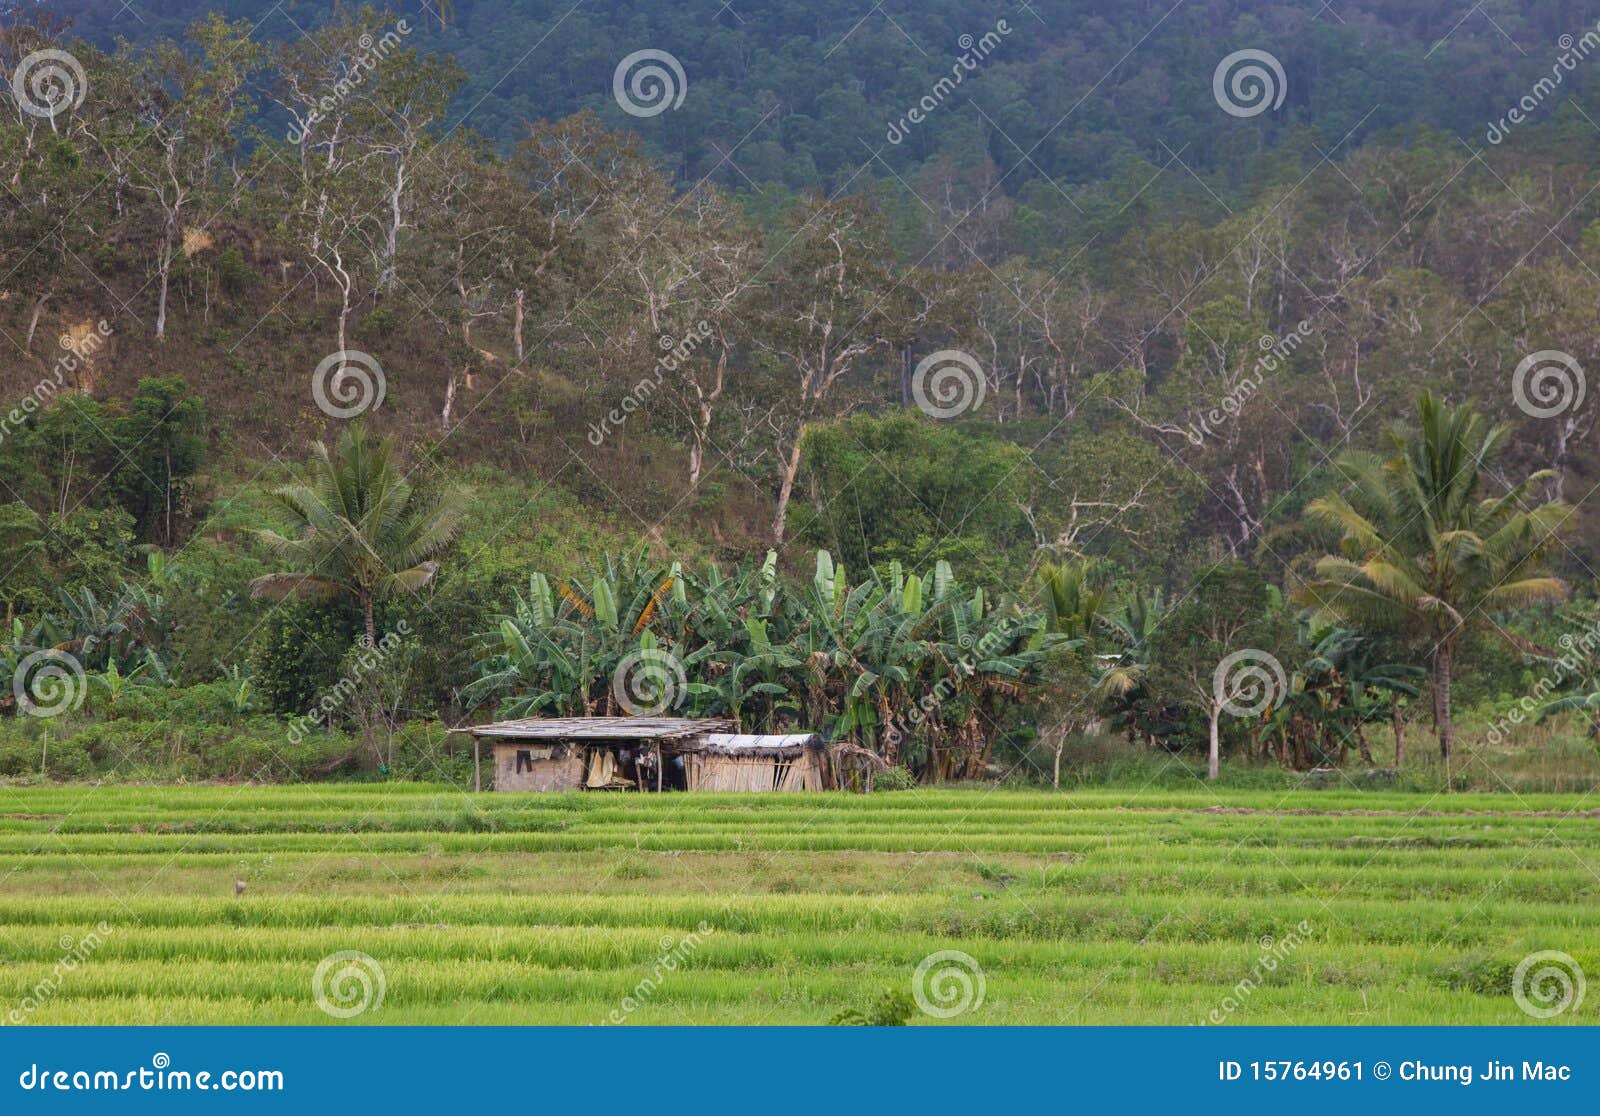 hut in padi field, timor leste